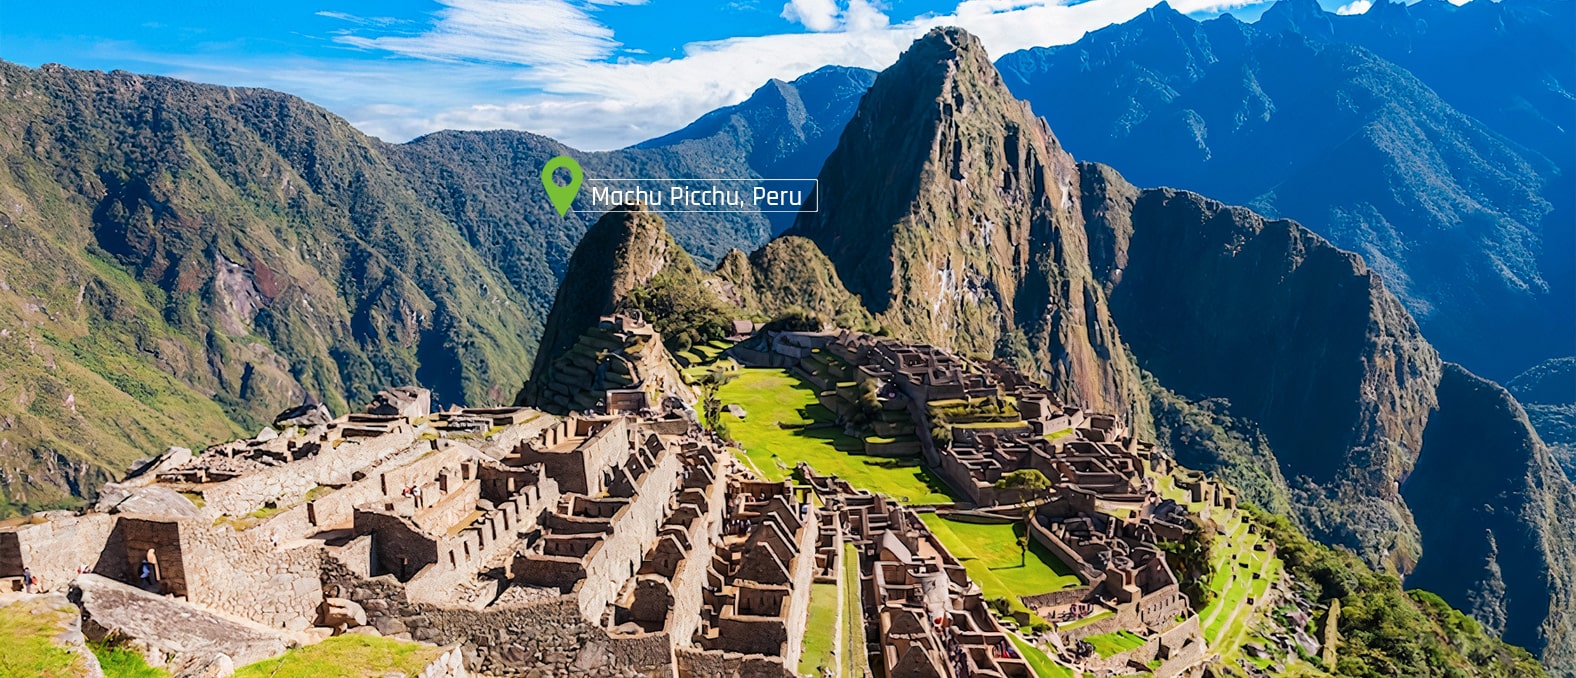 Machu-Picchu-Peru-slide-desktop